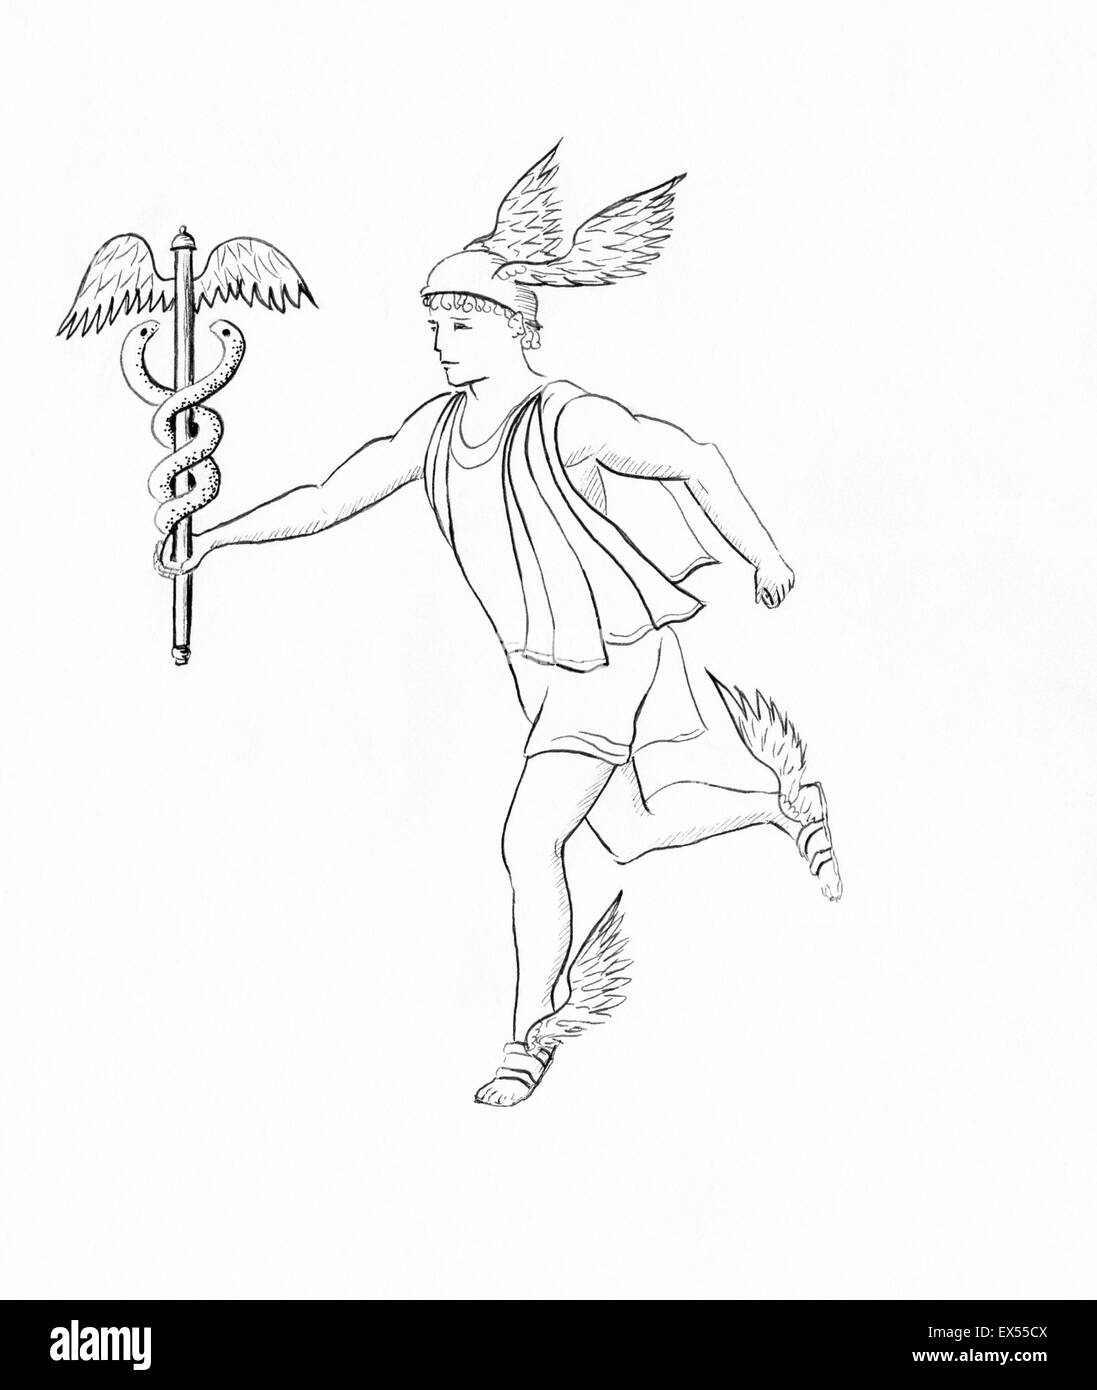 Le dessin des lignes d'Hermès, Mercure, ancien messager de Dieu. Banque D'Images